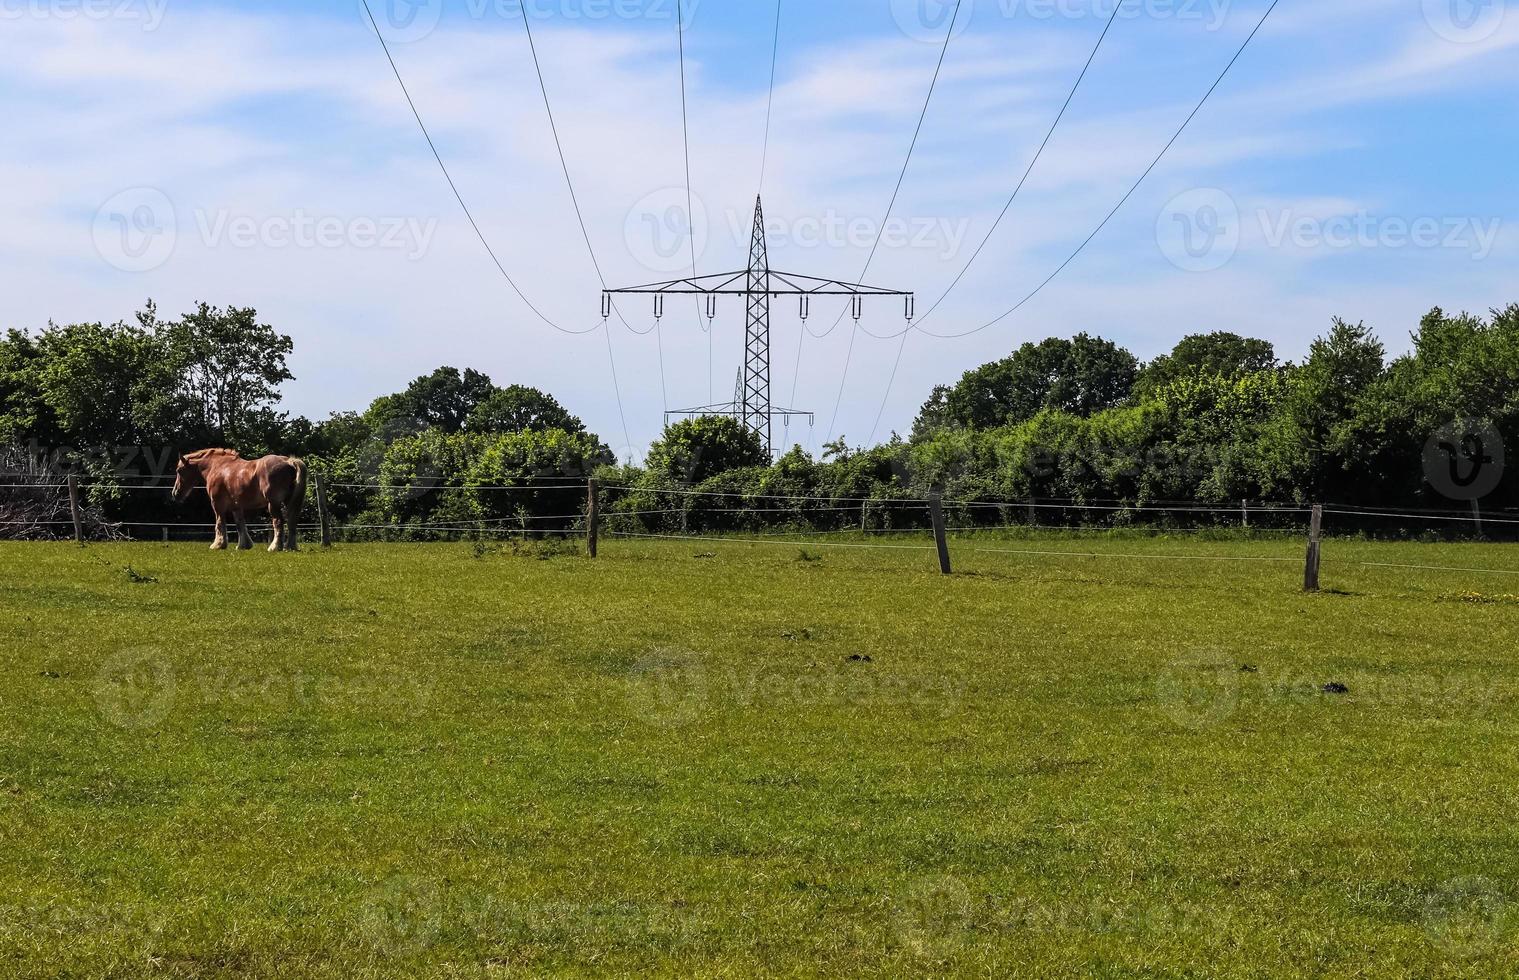 vista de torres eléctricas muy grandes con cables de alta tensión desde un coche en movimiento. foto